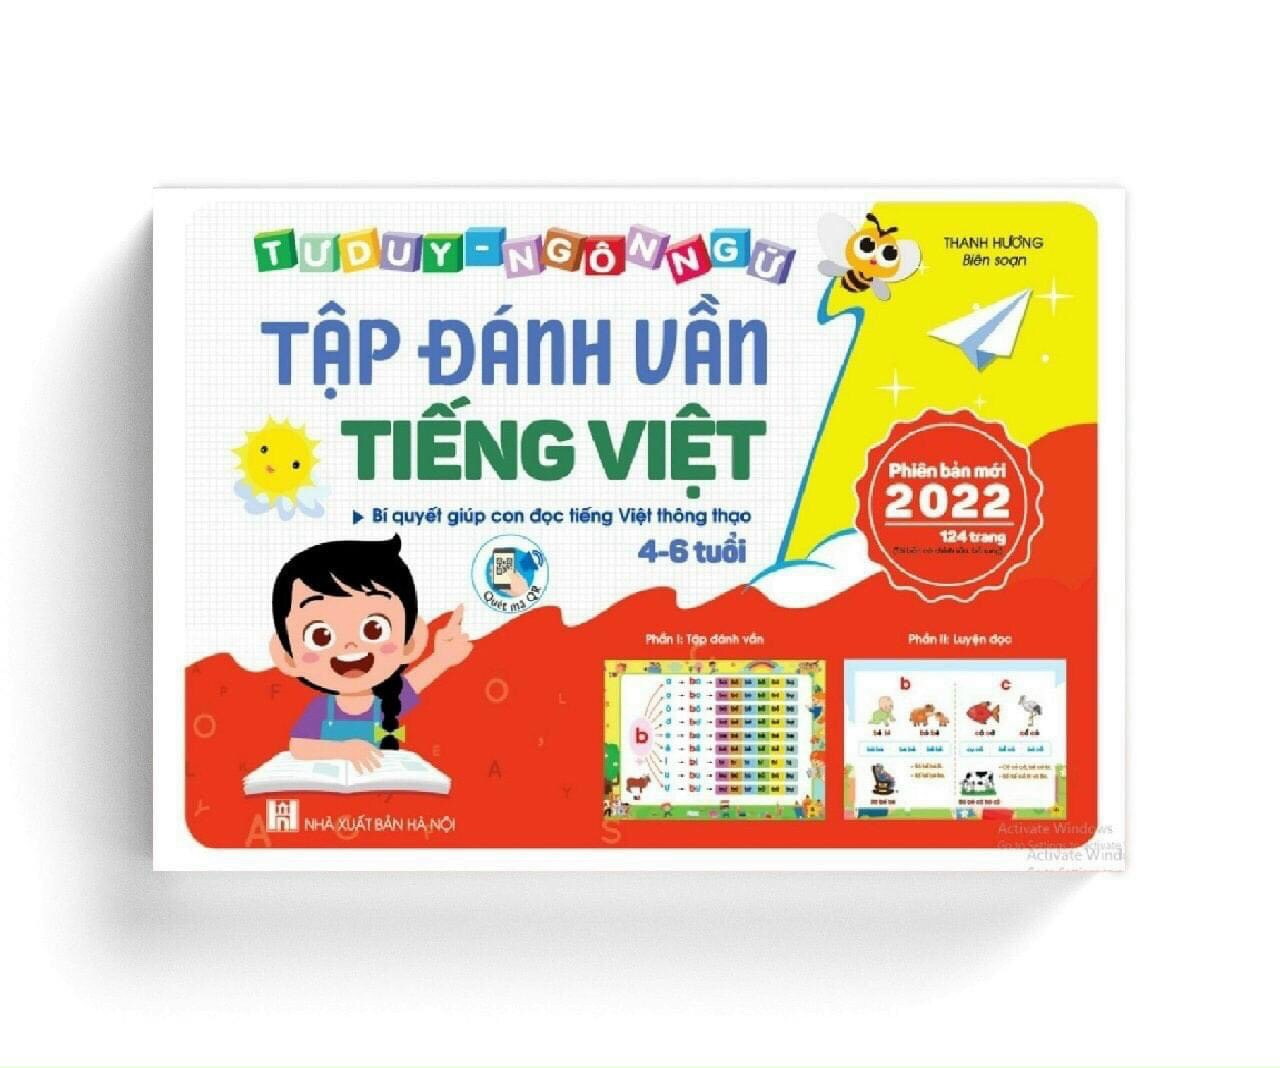 Tap danh van Tieng Viet cho be